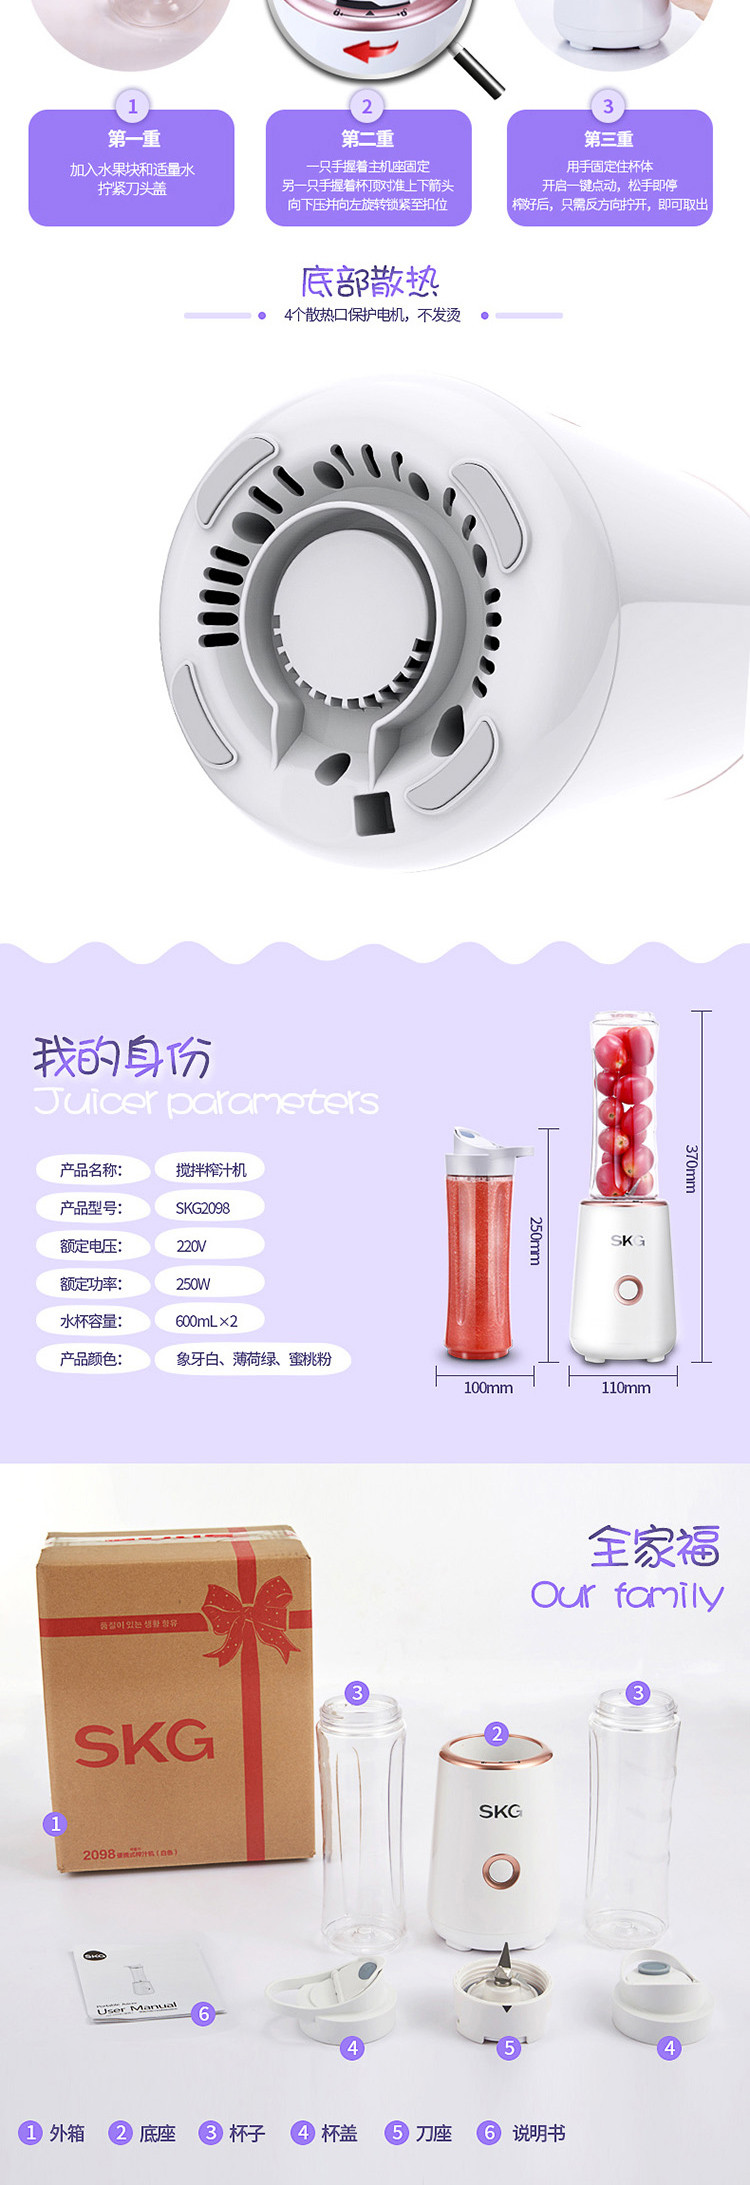 SKG 榨汁机迷你家用多功能小型便携式电动榨汁杯 果汁杯2098 白色